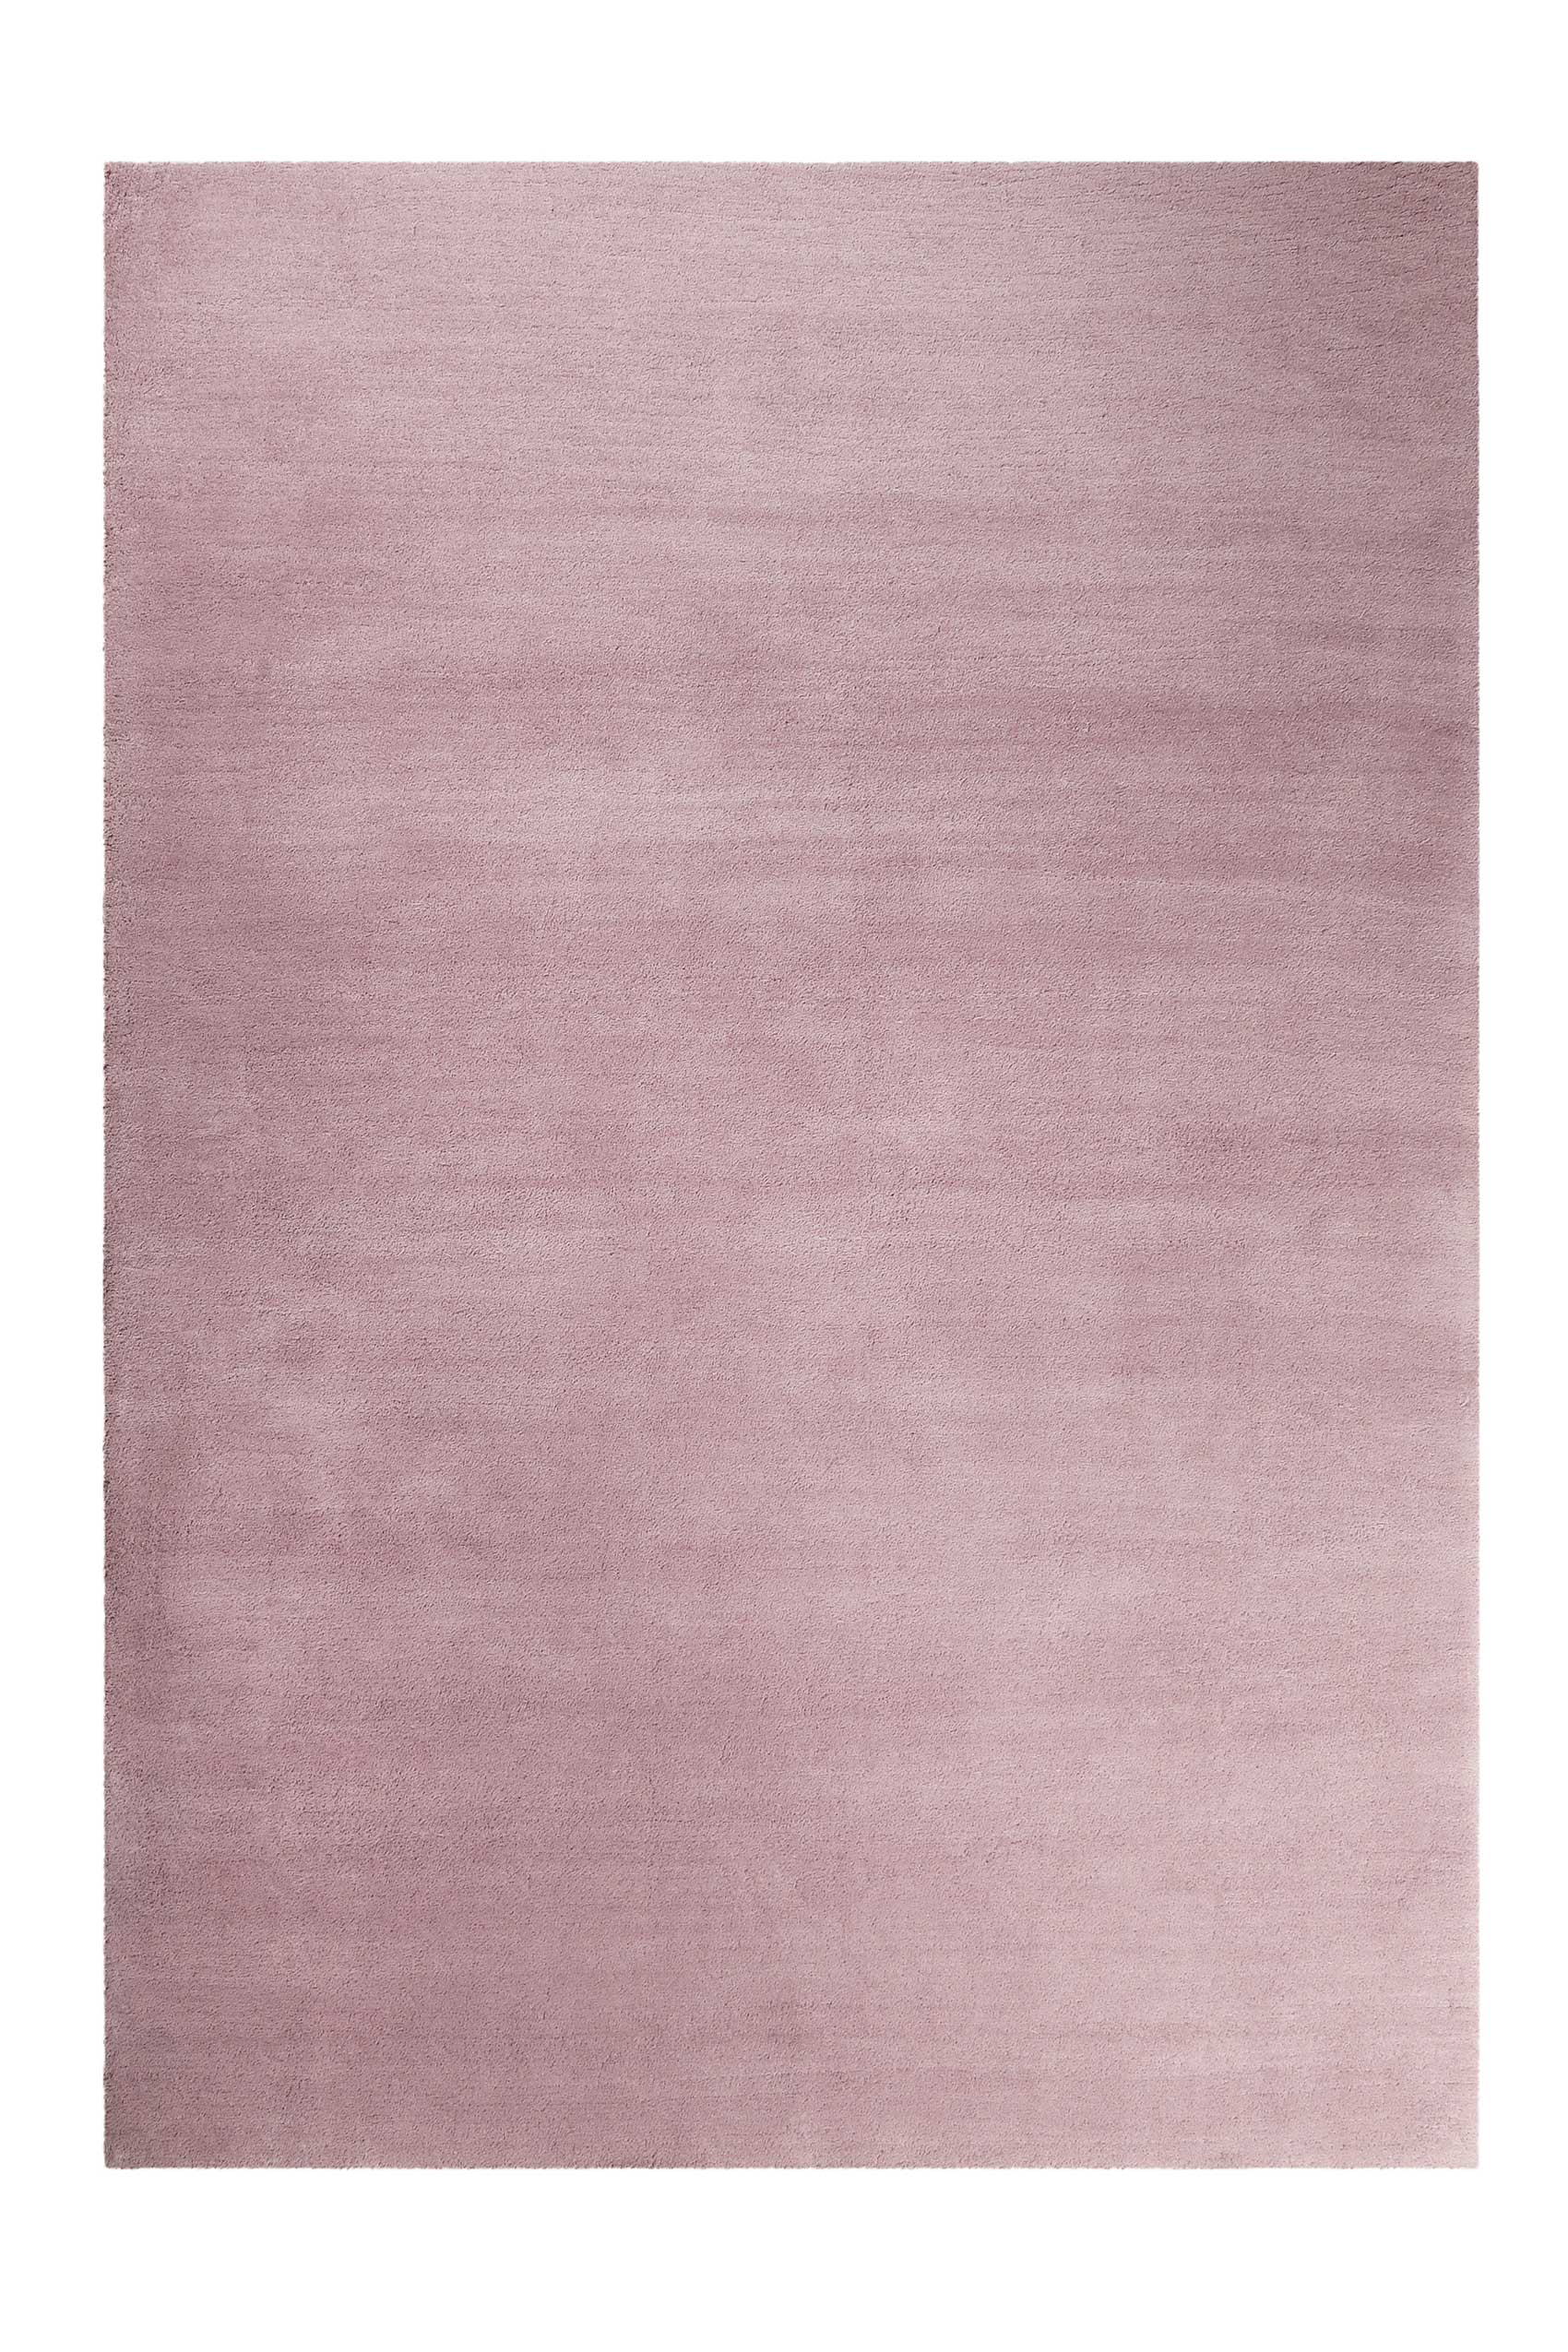 Esprit Teppich pastell Rosa Hochflor » Loft « - Ansicht 1